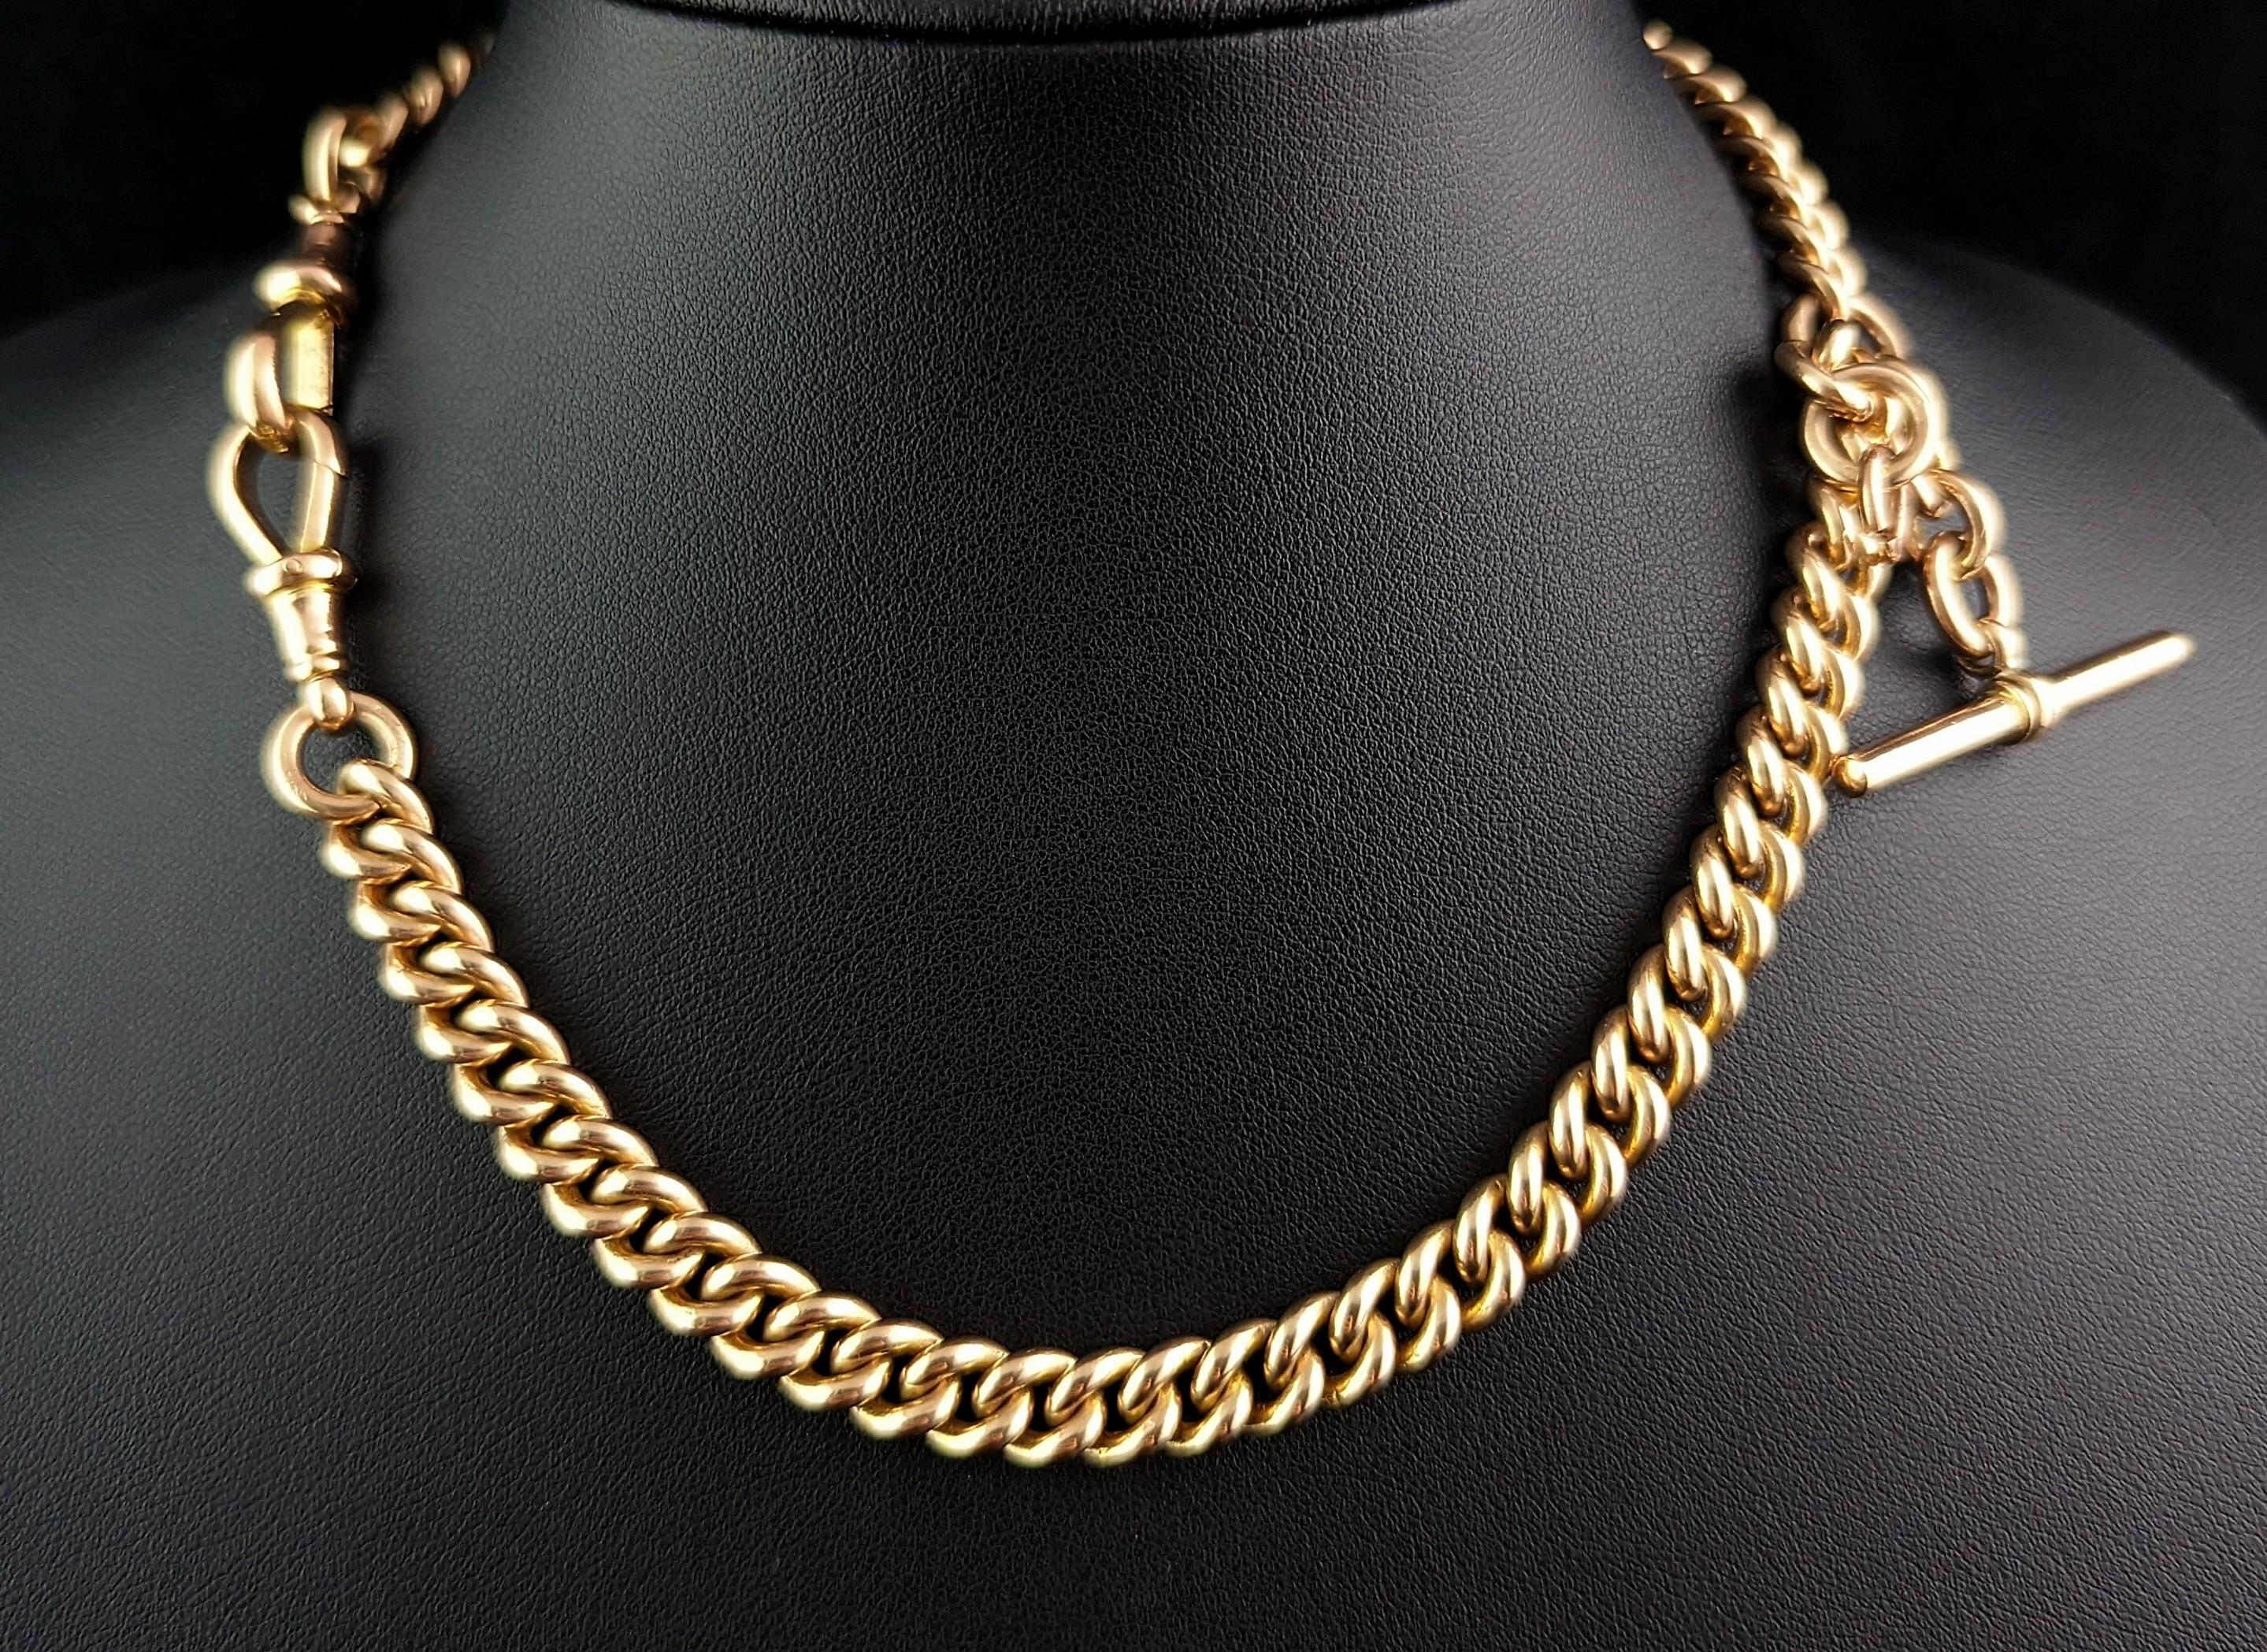 Antique 9k gold Albert chain necklace, watch chain, Heavy  7